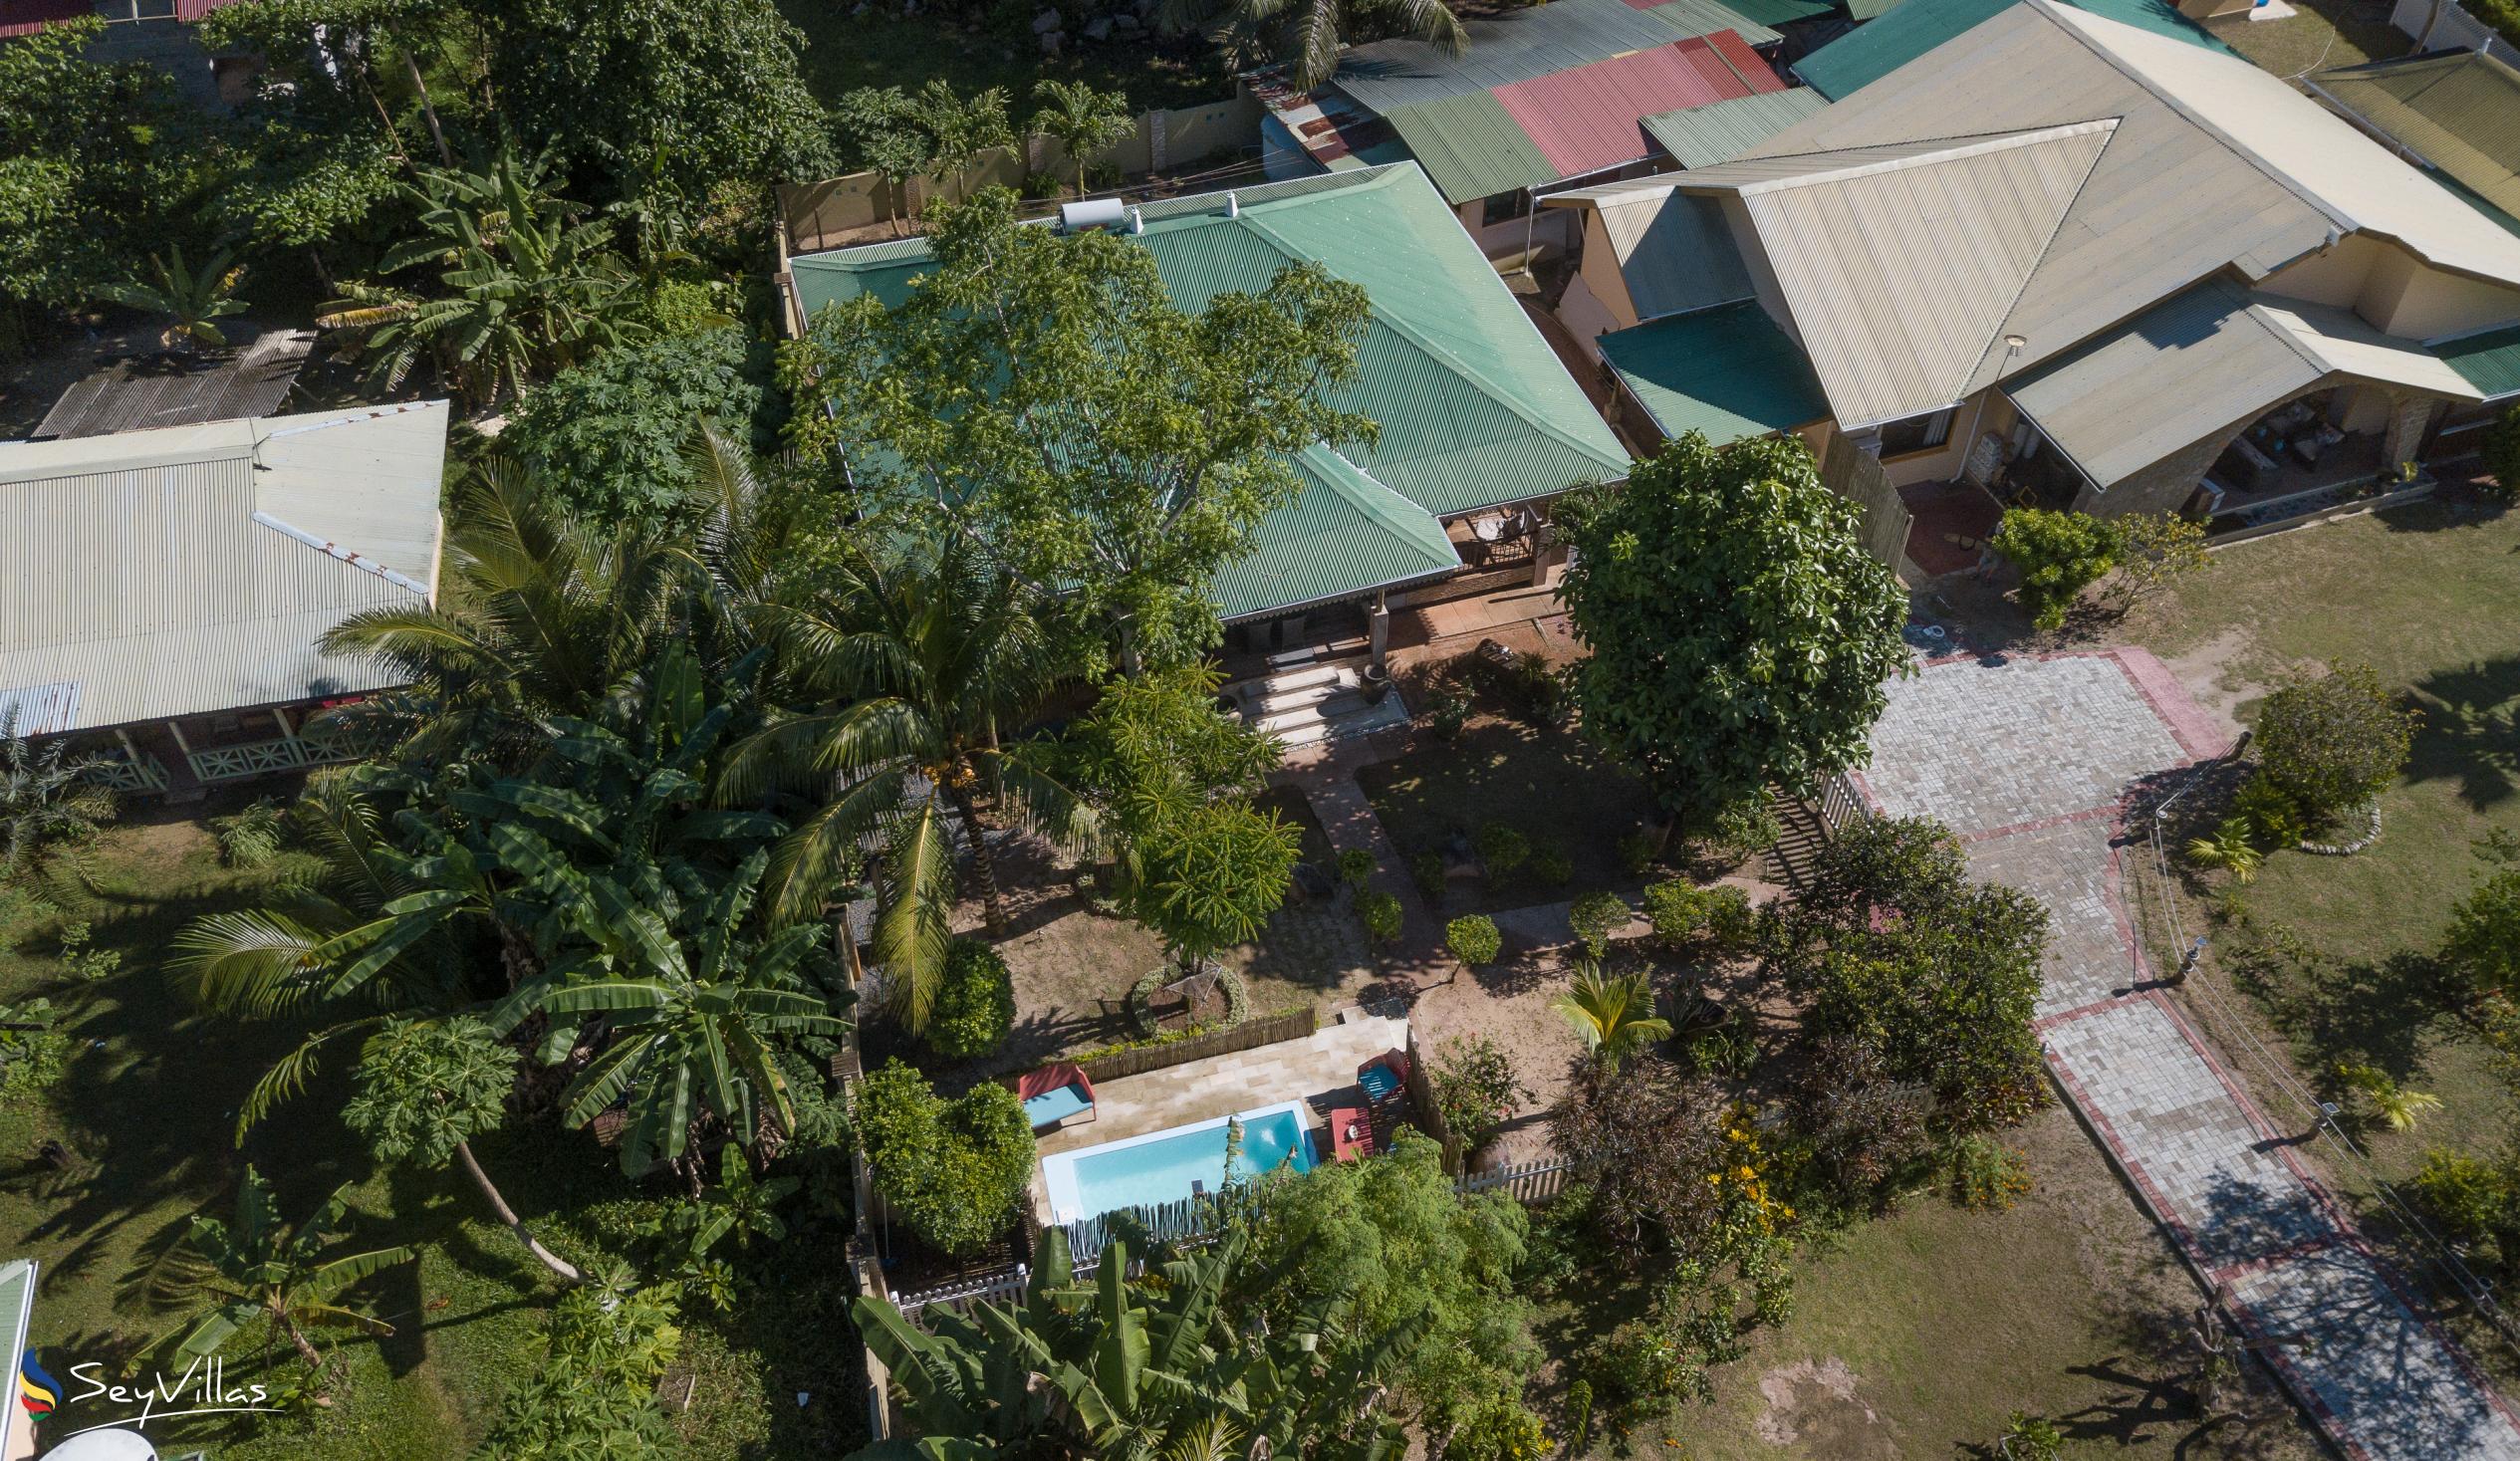 Foto 75: Casa de Leela - Bungalow 2 chambres de luxe avec piscine privée - La Digue (Seychelles)